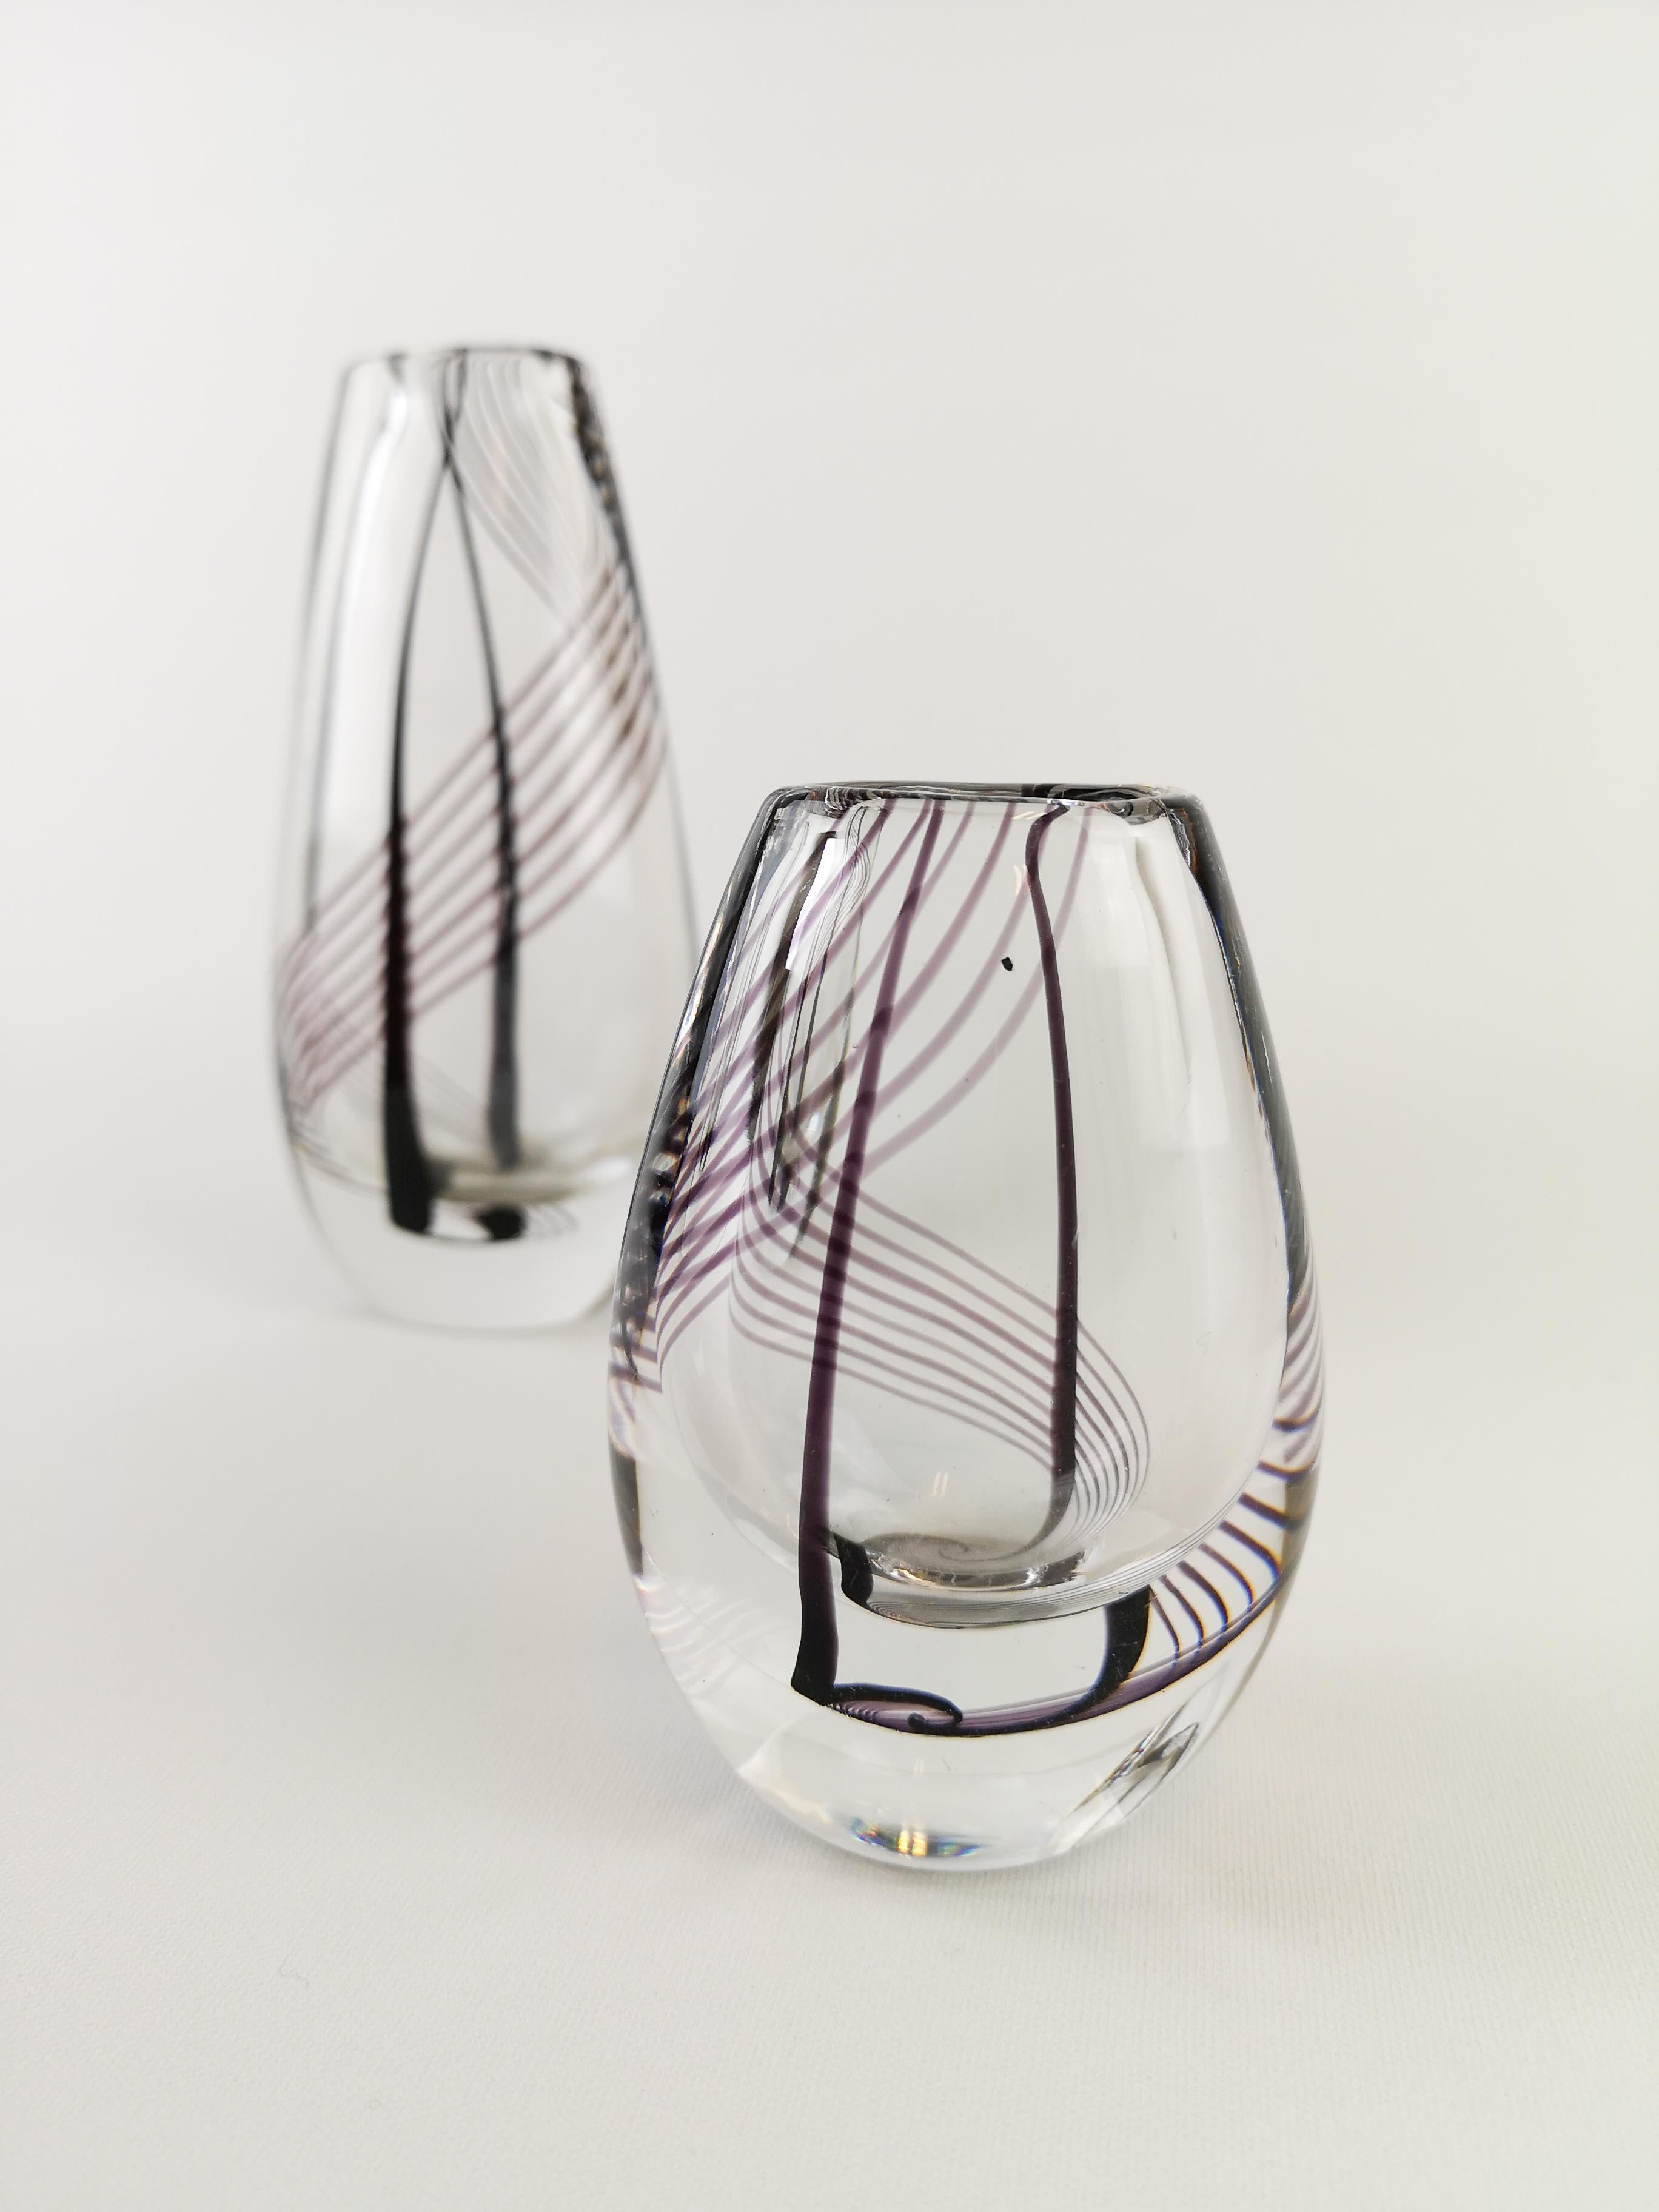 Vasen aus Kunstglas von Kosta Boda, signiert, Vicke Lindstrand (Skandinavische Moderne)